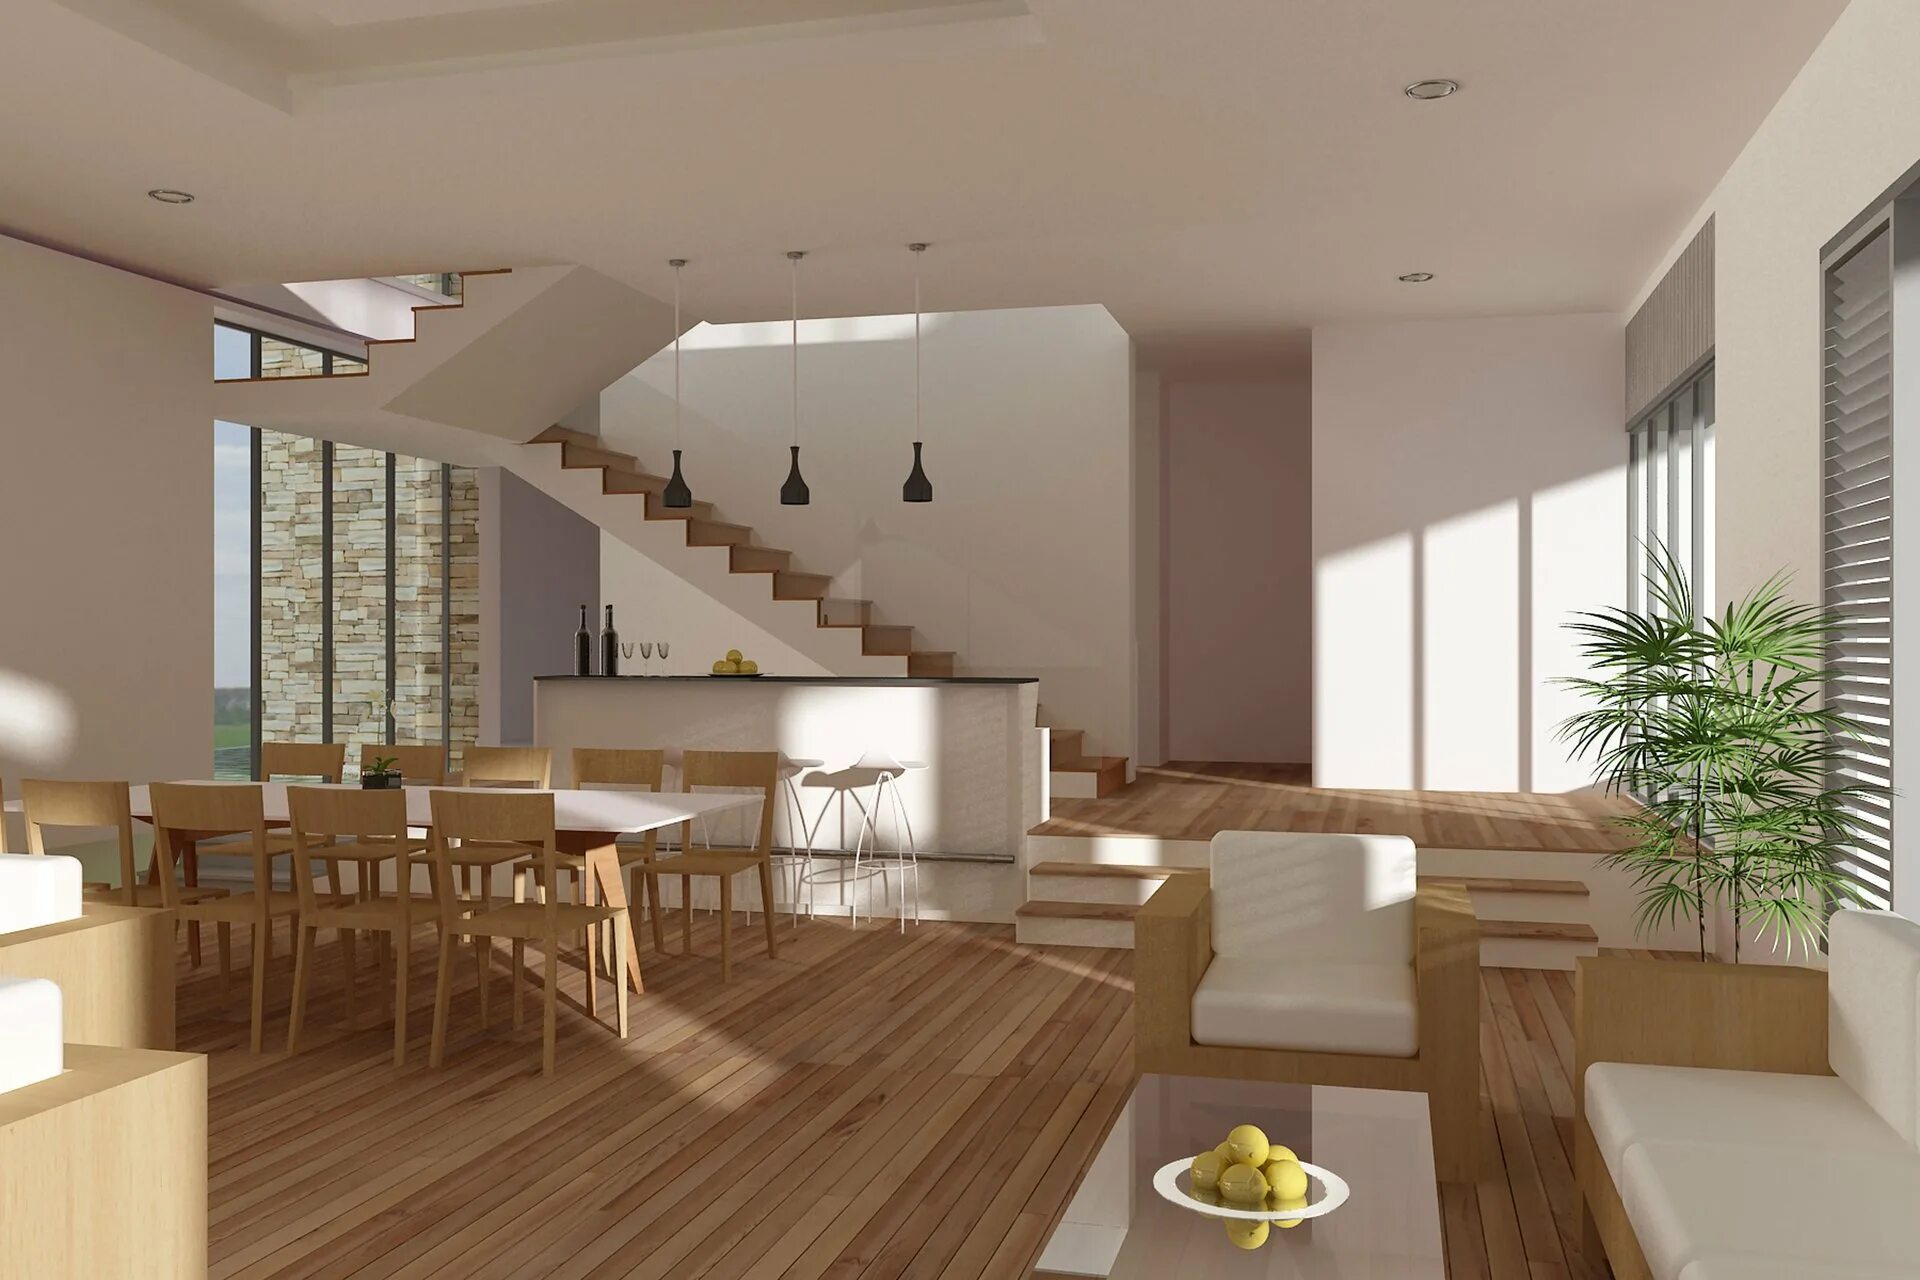 Помещения первого этажа. Кухня гостиная с лестницей. Интерьеры загородных домов и коттеджей. Современный интерьер коттеджа. Интерьер коттеджа в современном стиле.